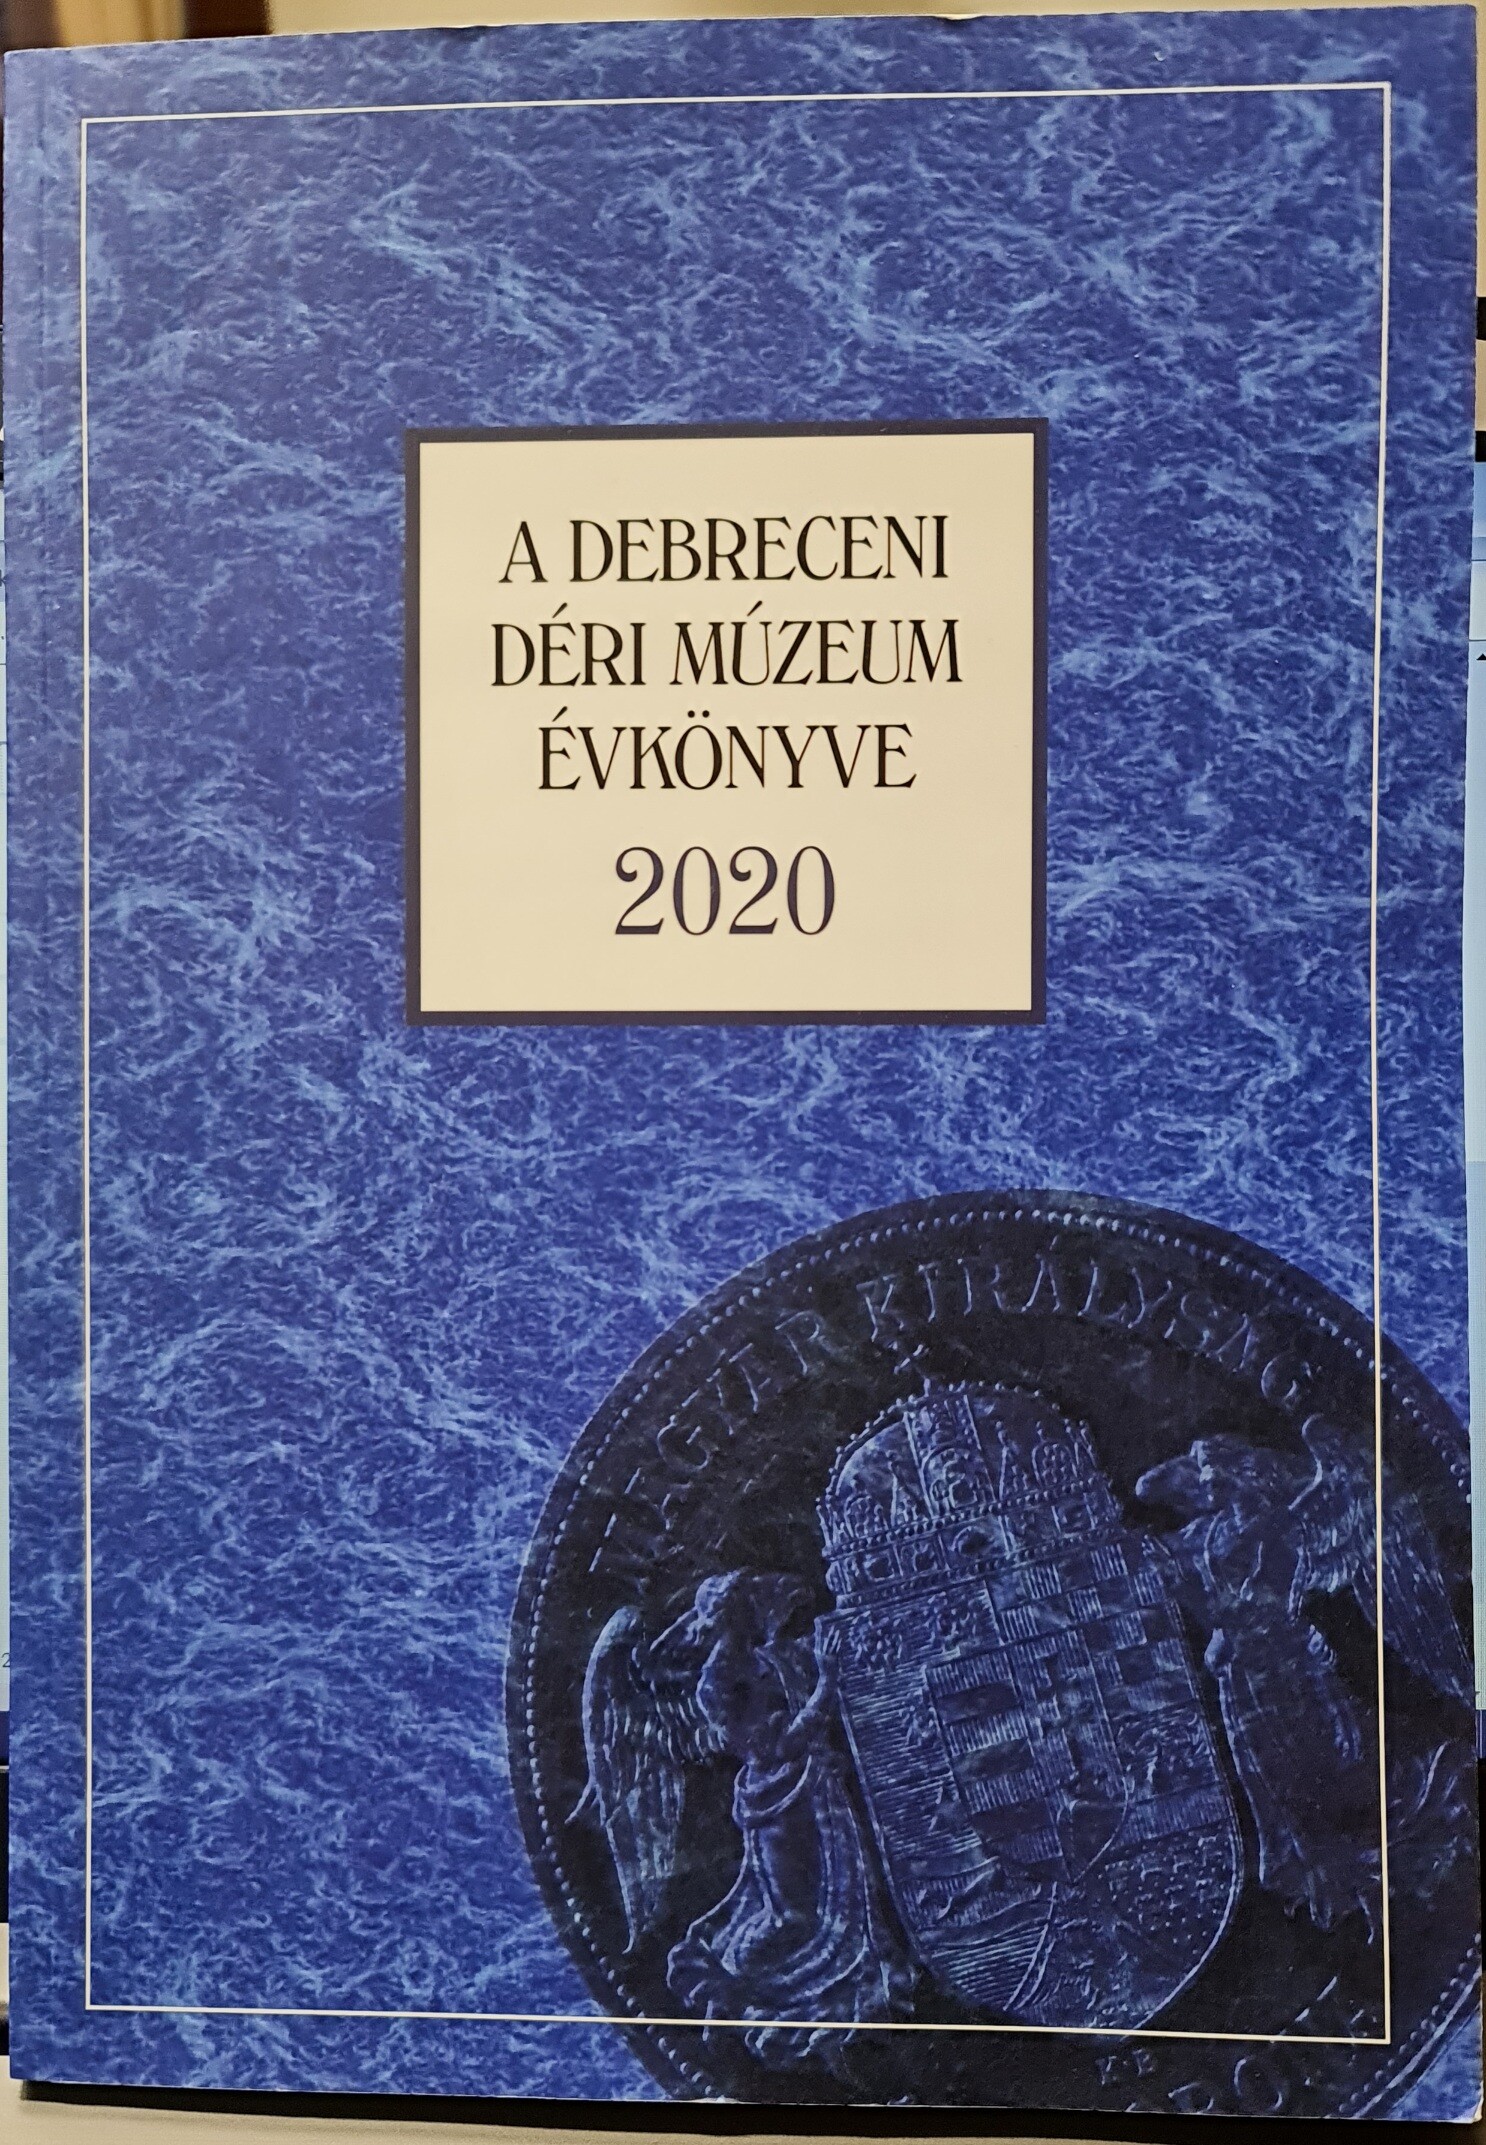 A Debreceni Déri Múzeum kiadványai 2020/91. - A Debreceni Déri Múzeum Évkönyve 2020 (Rippl-Rónai Múzeum CC BY-NC-ND)